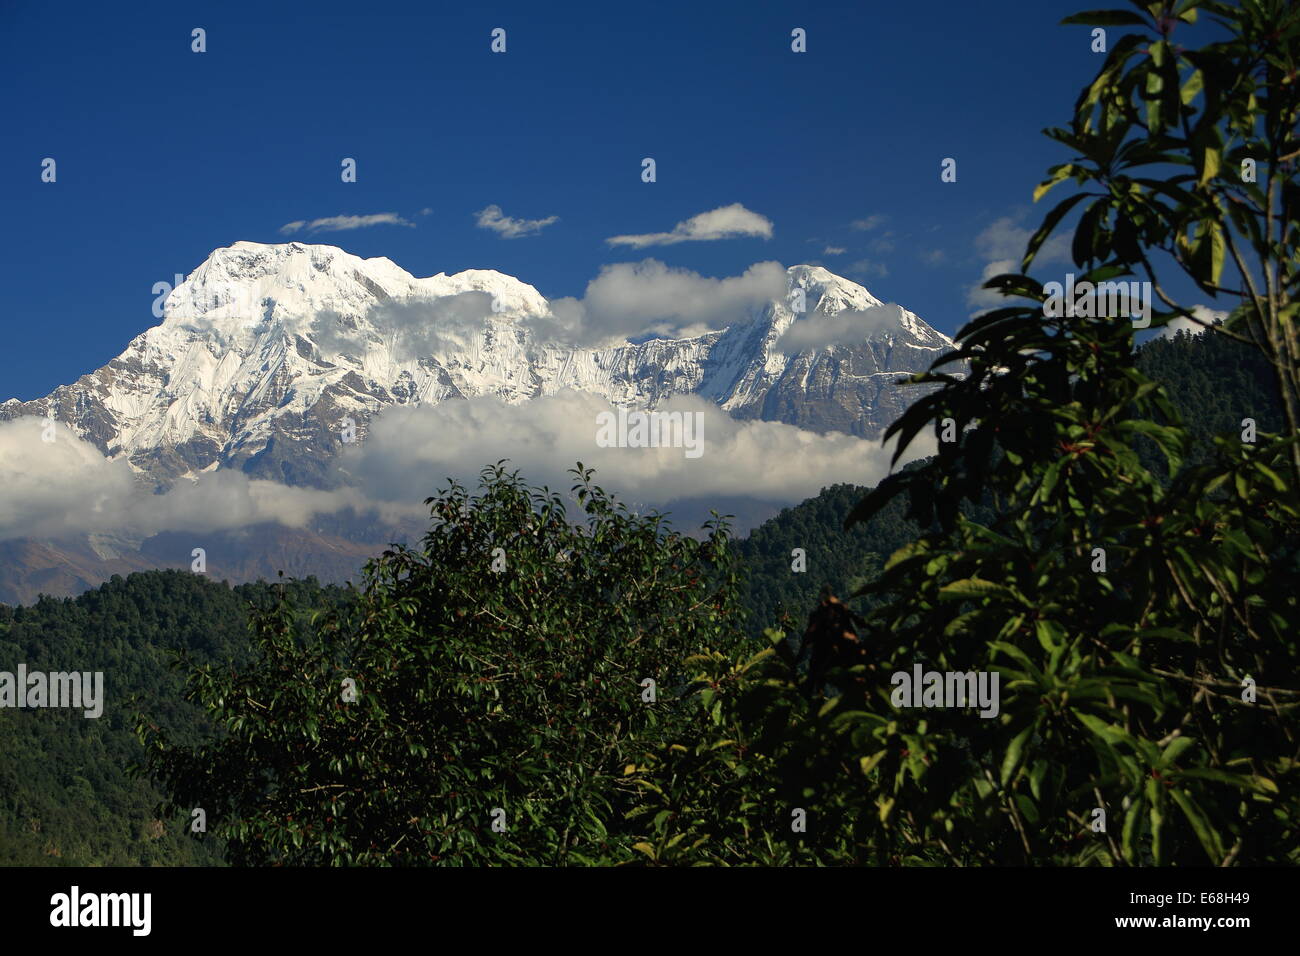 DHAMPUS, NEPAL - 9 ottobre: il 7219 ms.alta Annapurna sud (L) e il 6441 ms.alta Hiun Chuli picchi Foto Stock